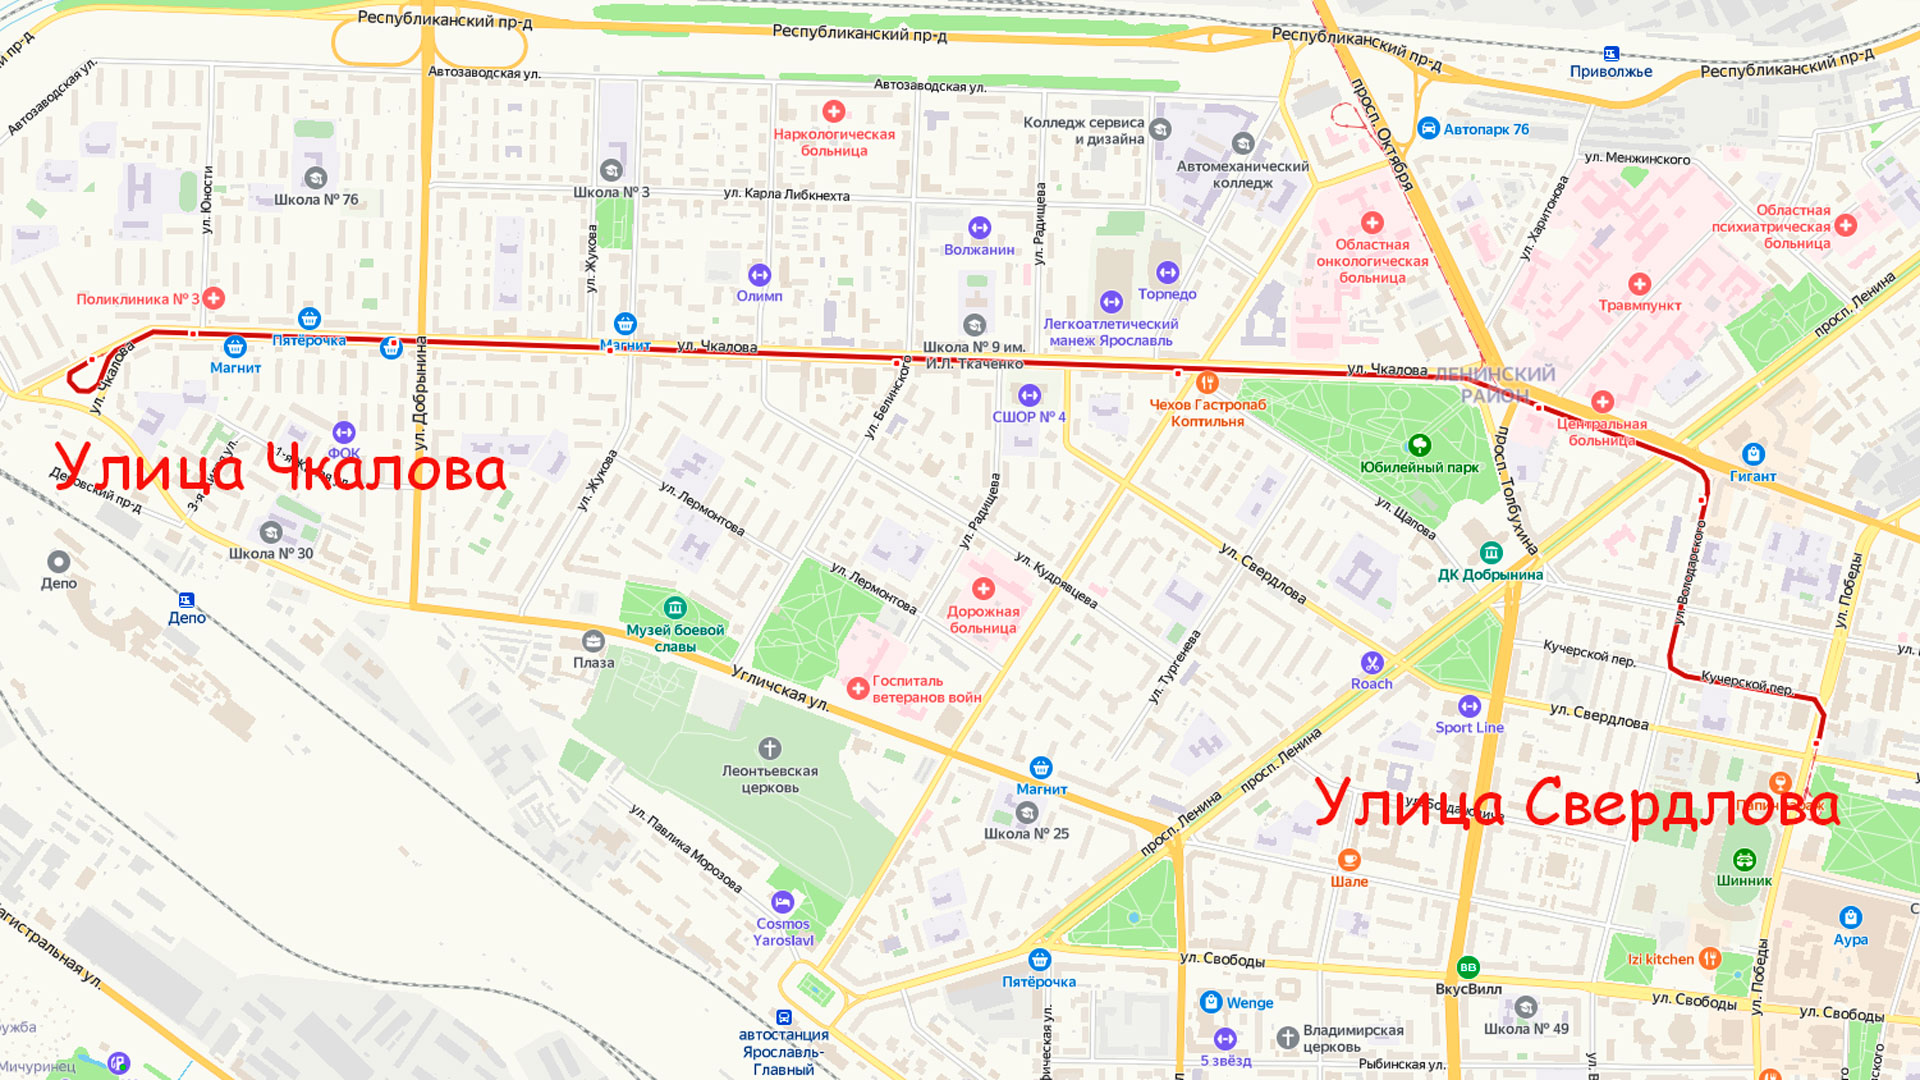 Маршрут трамвая 1 в Ярославле на карте.